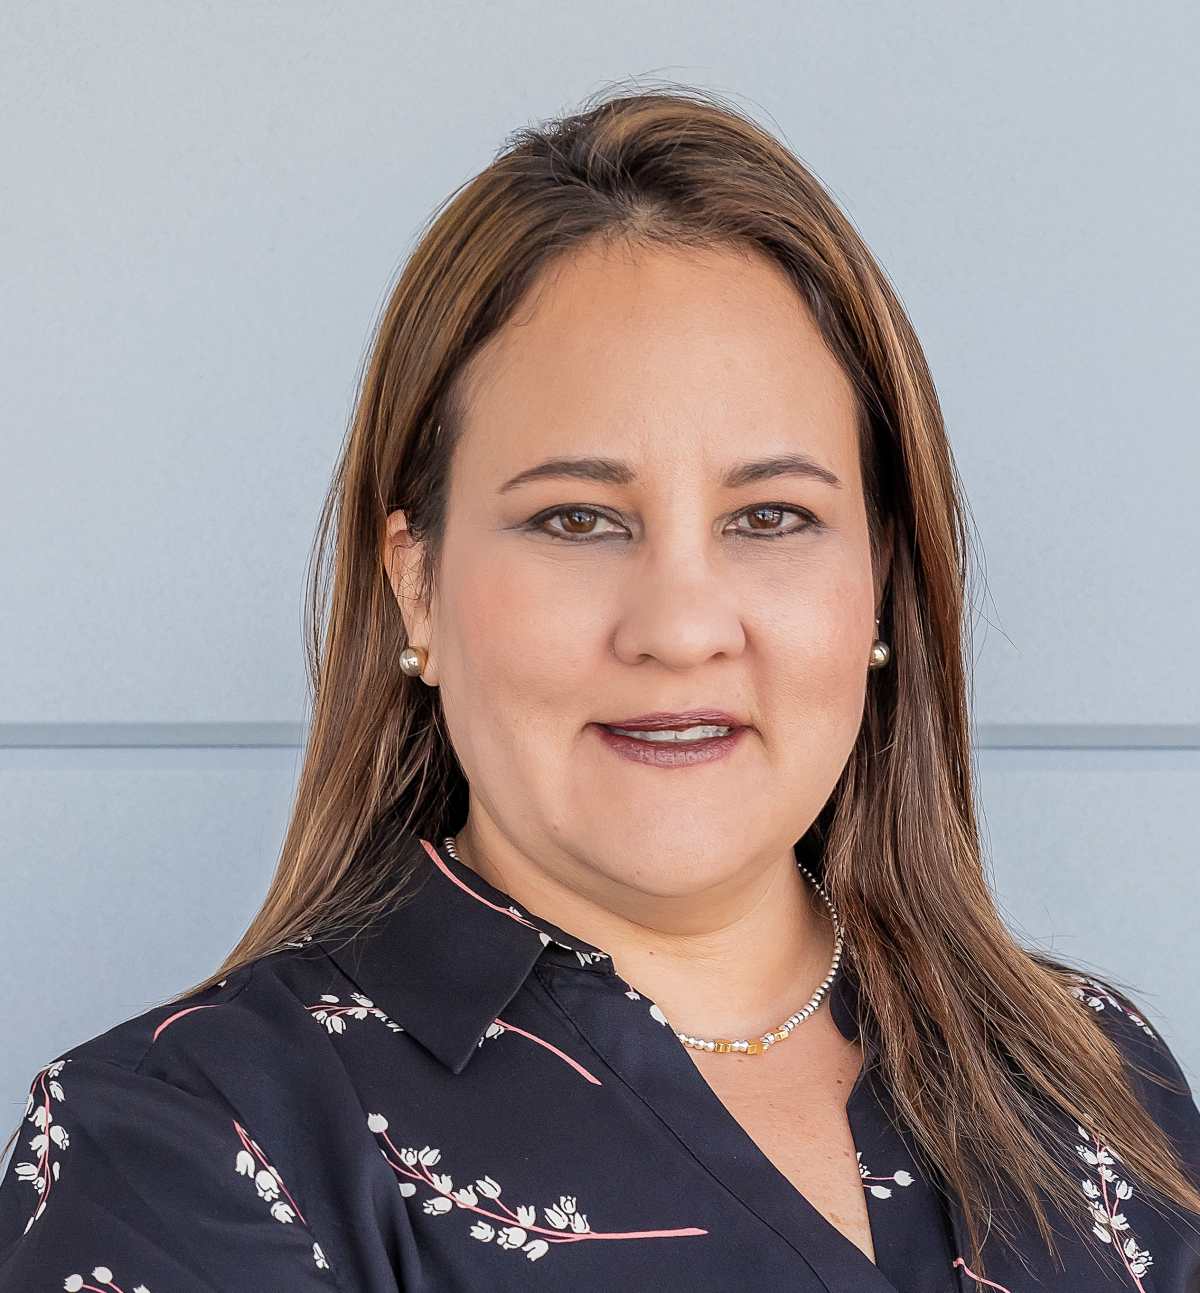 Dra. Eyra Medina, Líder para América Central y el Caribe en Pfizer